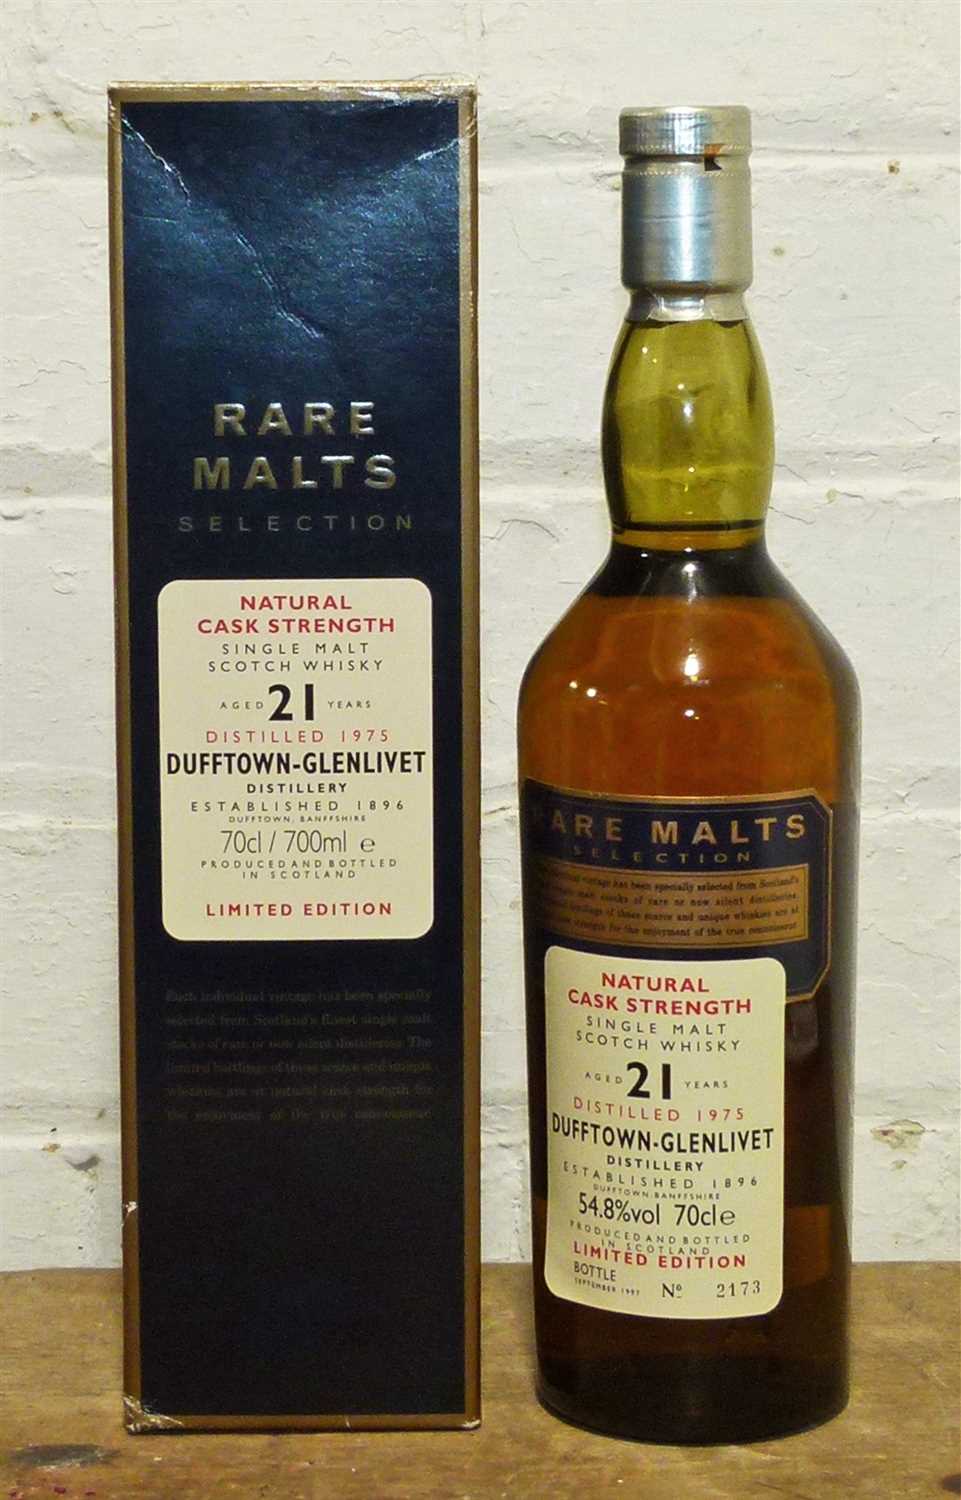 Lot 71 - 1 Bottle Dufftown-Glenlivet Distilled 1975 ‘Rare Malts Selection’ 21 Year Old